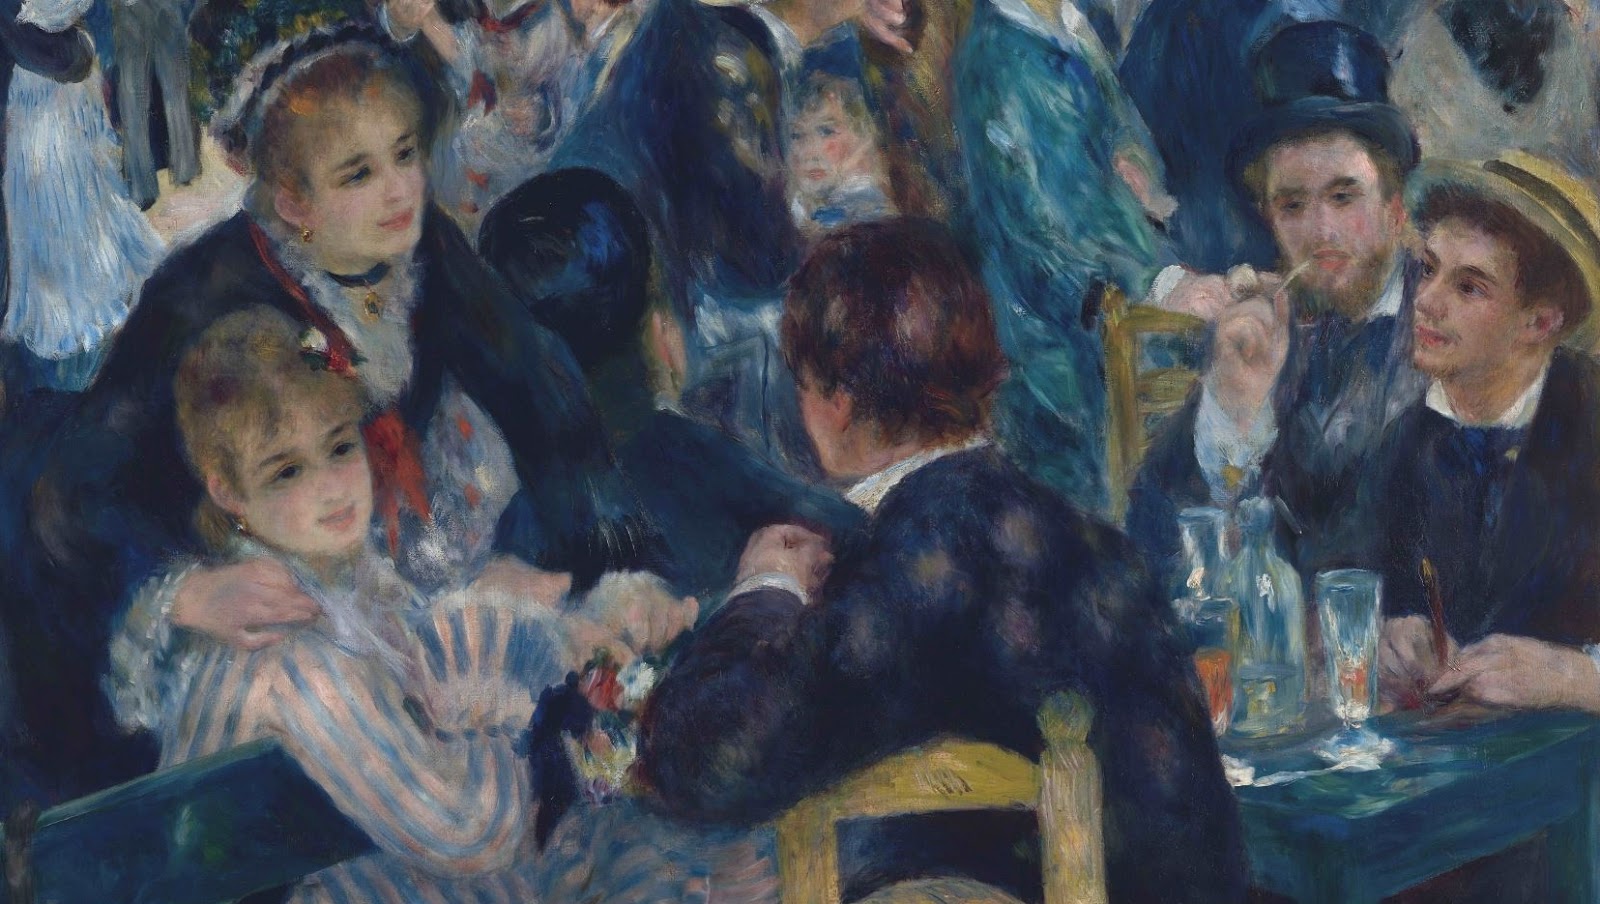 Pierre+Auguste+Renoir-1841-1-19 (421).JPG